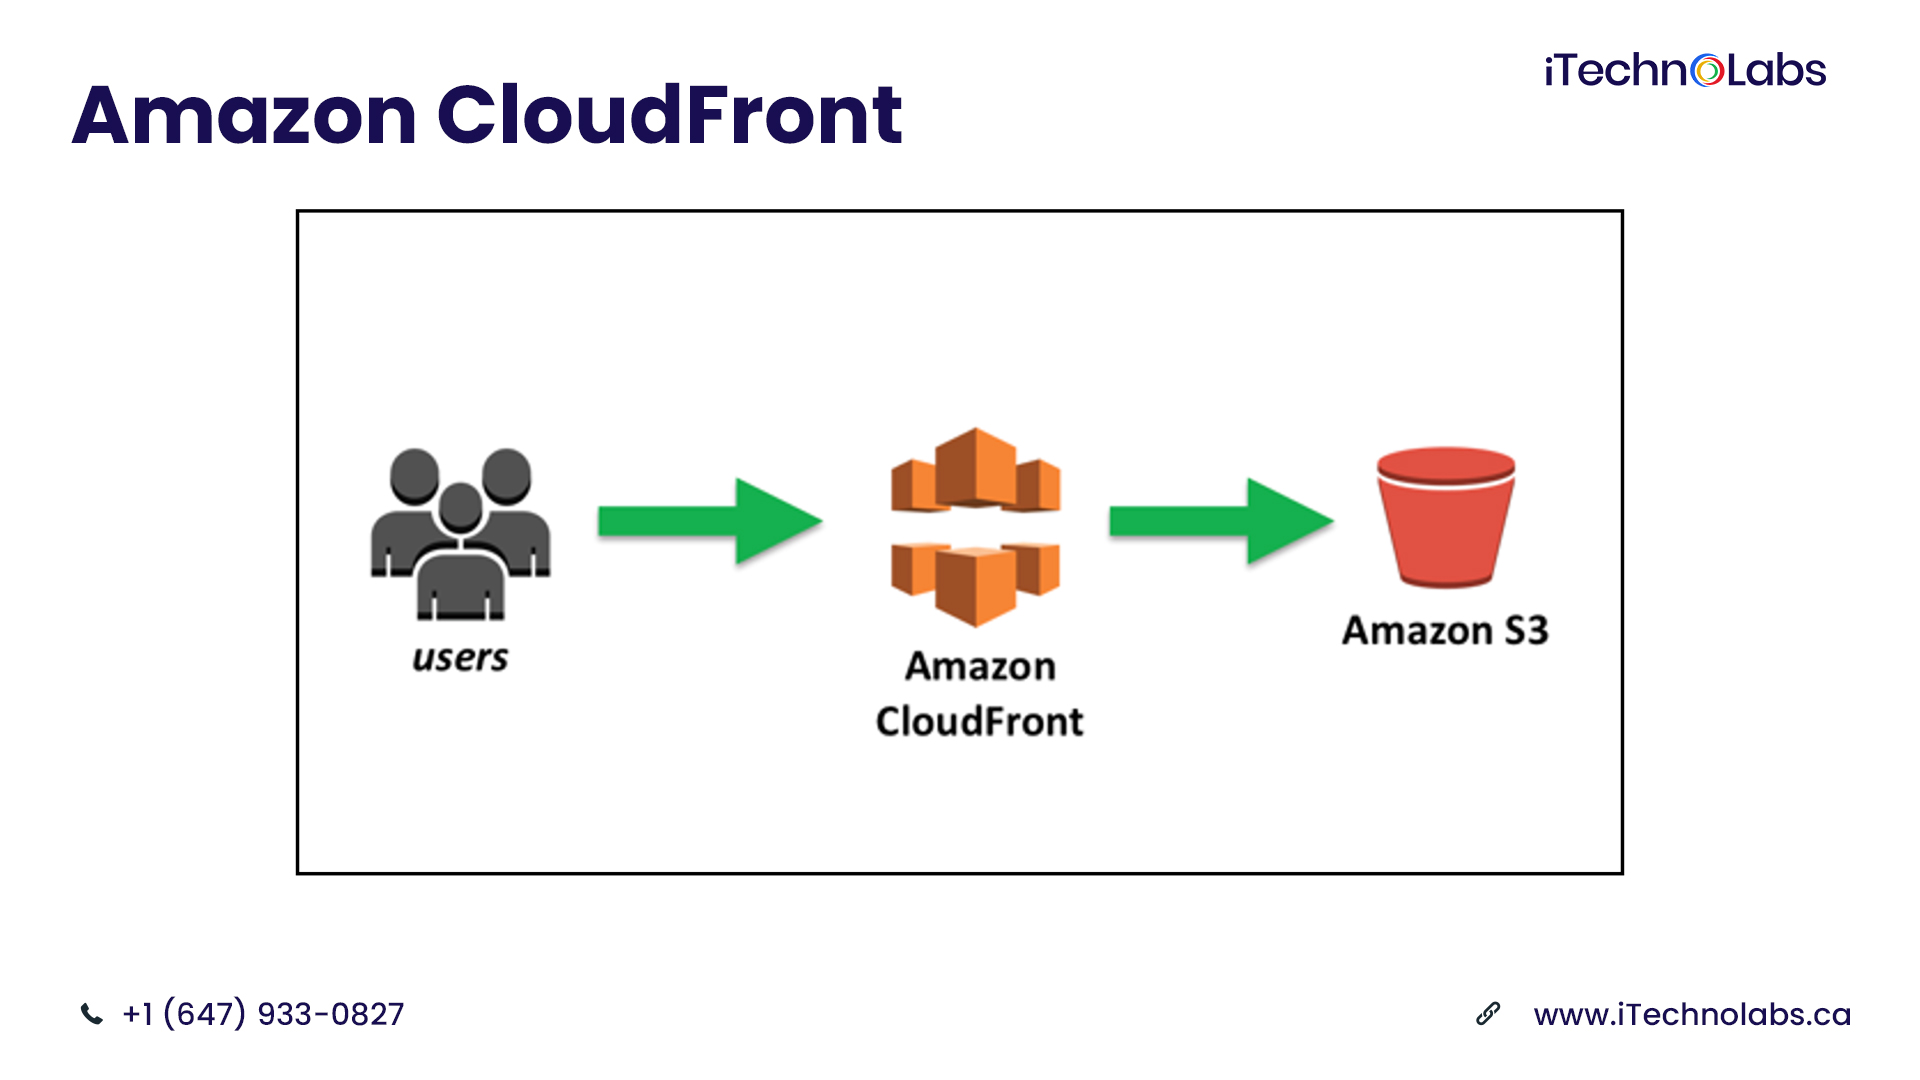 amazon cloudfront aws services itechnolabs